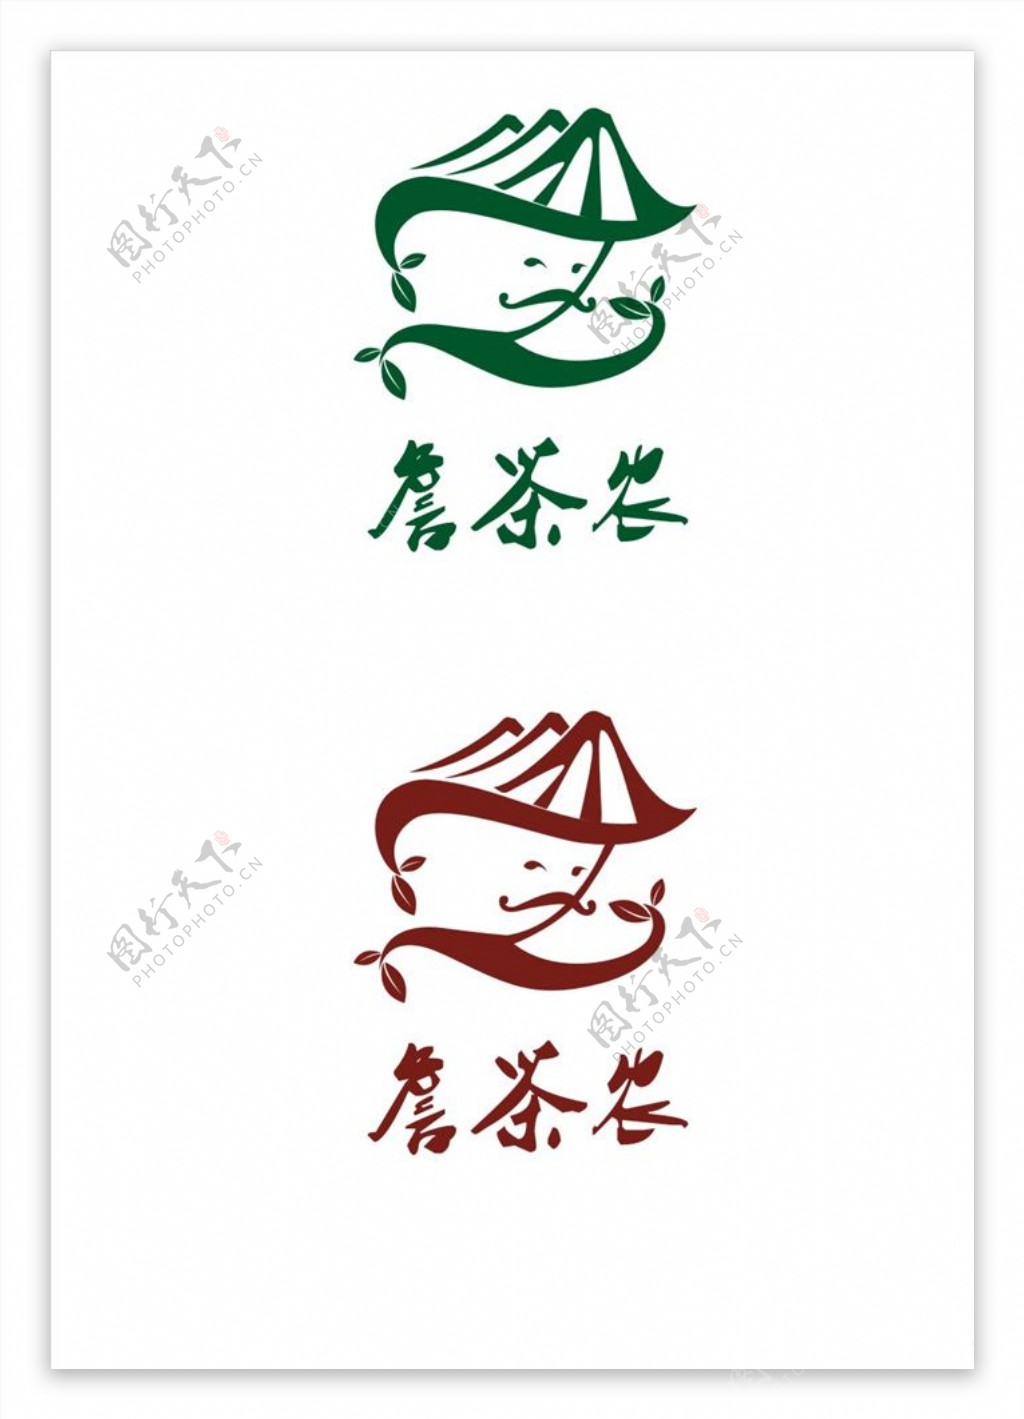 詹茶农logo设计